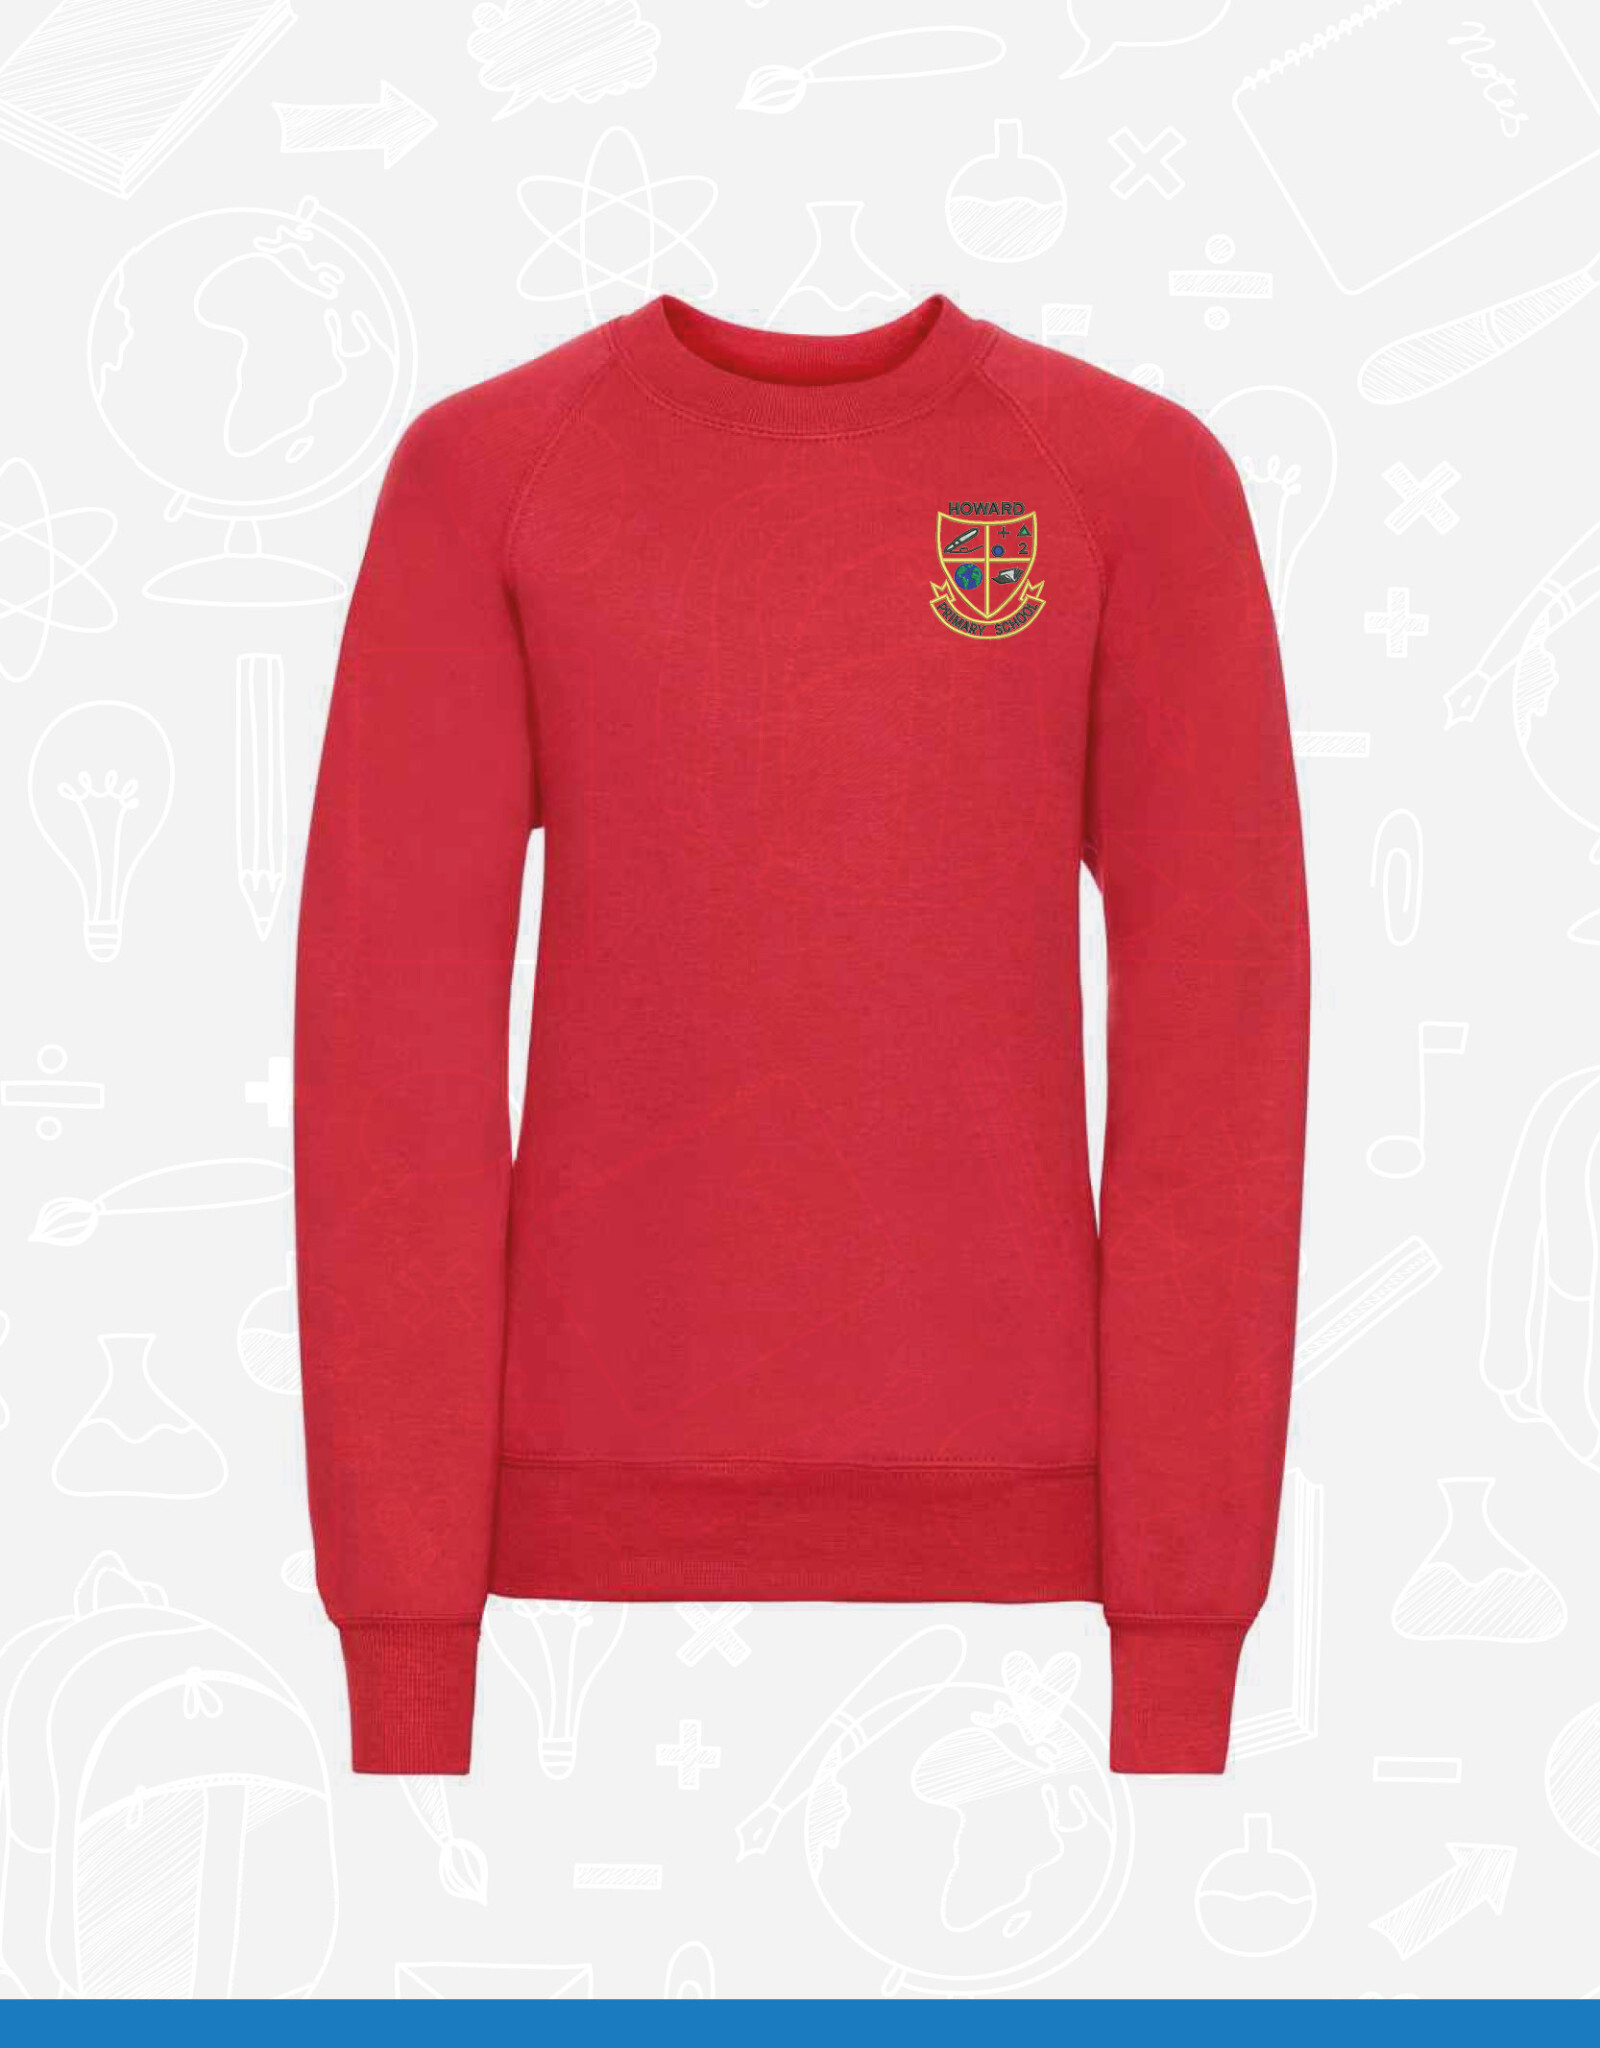 Russell Howard Primary School Sweatshirt (762B)